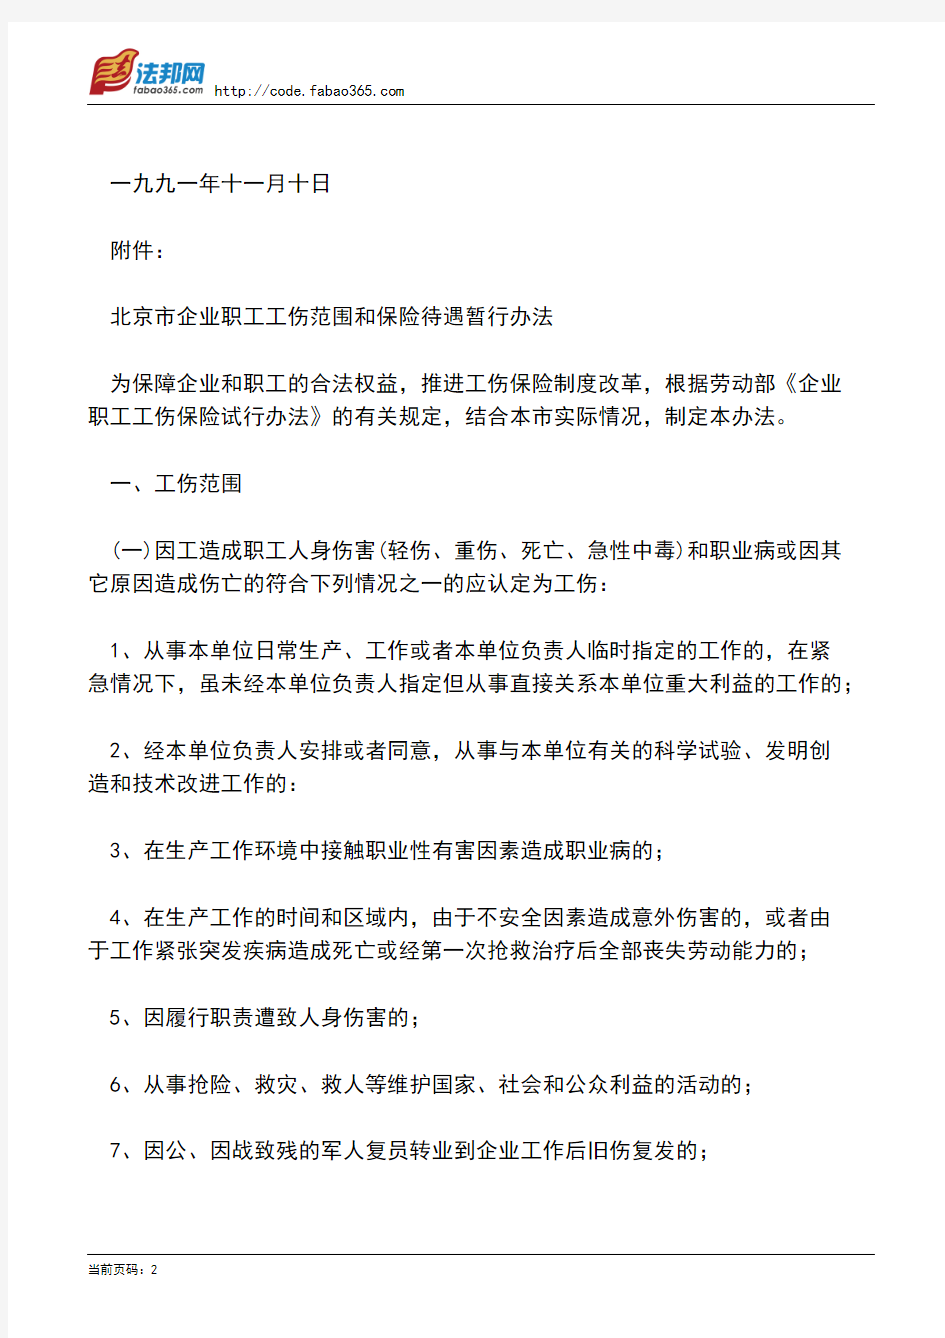 北京市地方税务局转发市劳动局关于印发《北京市企业职工工伤范围和保险待遇暂行办法》的通知